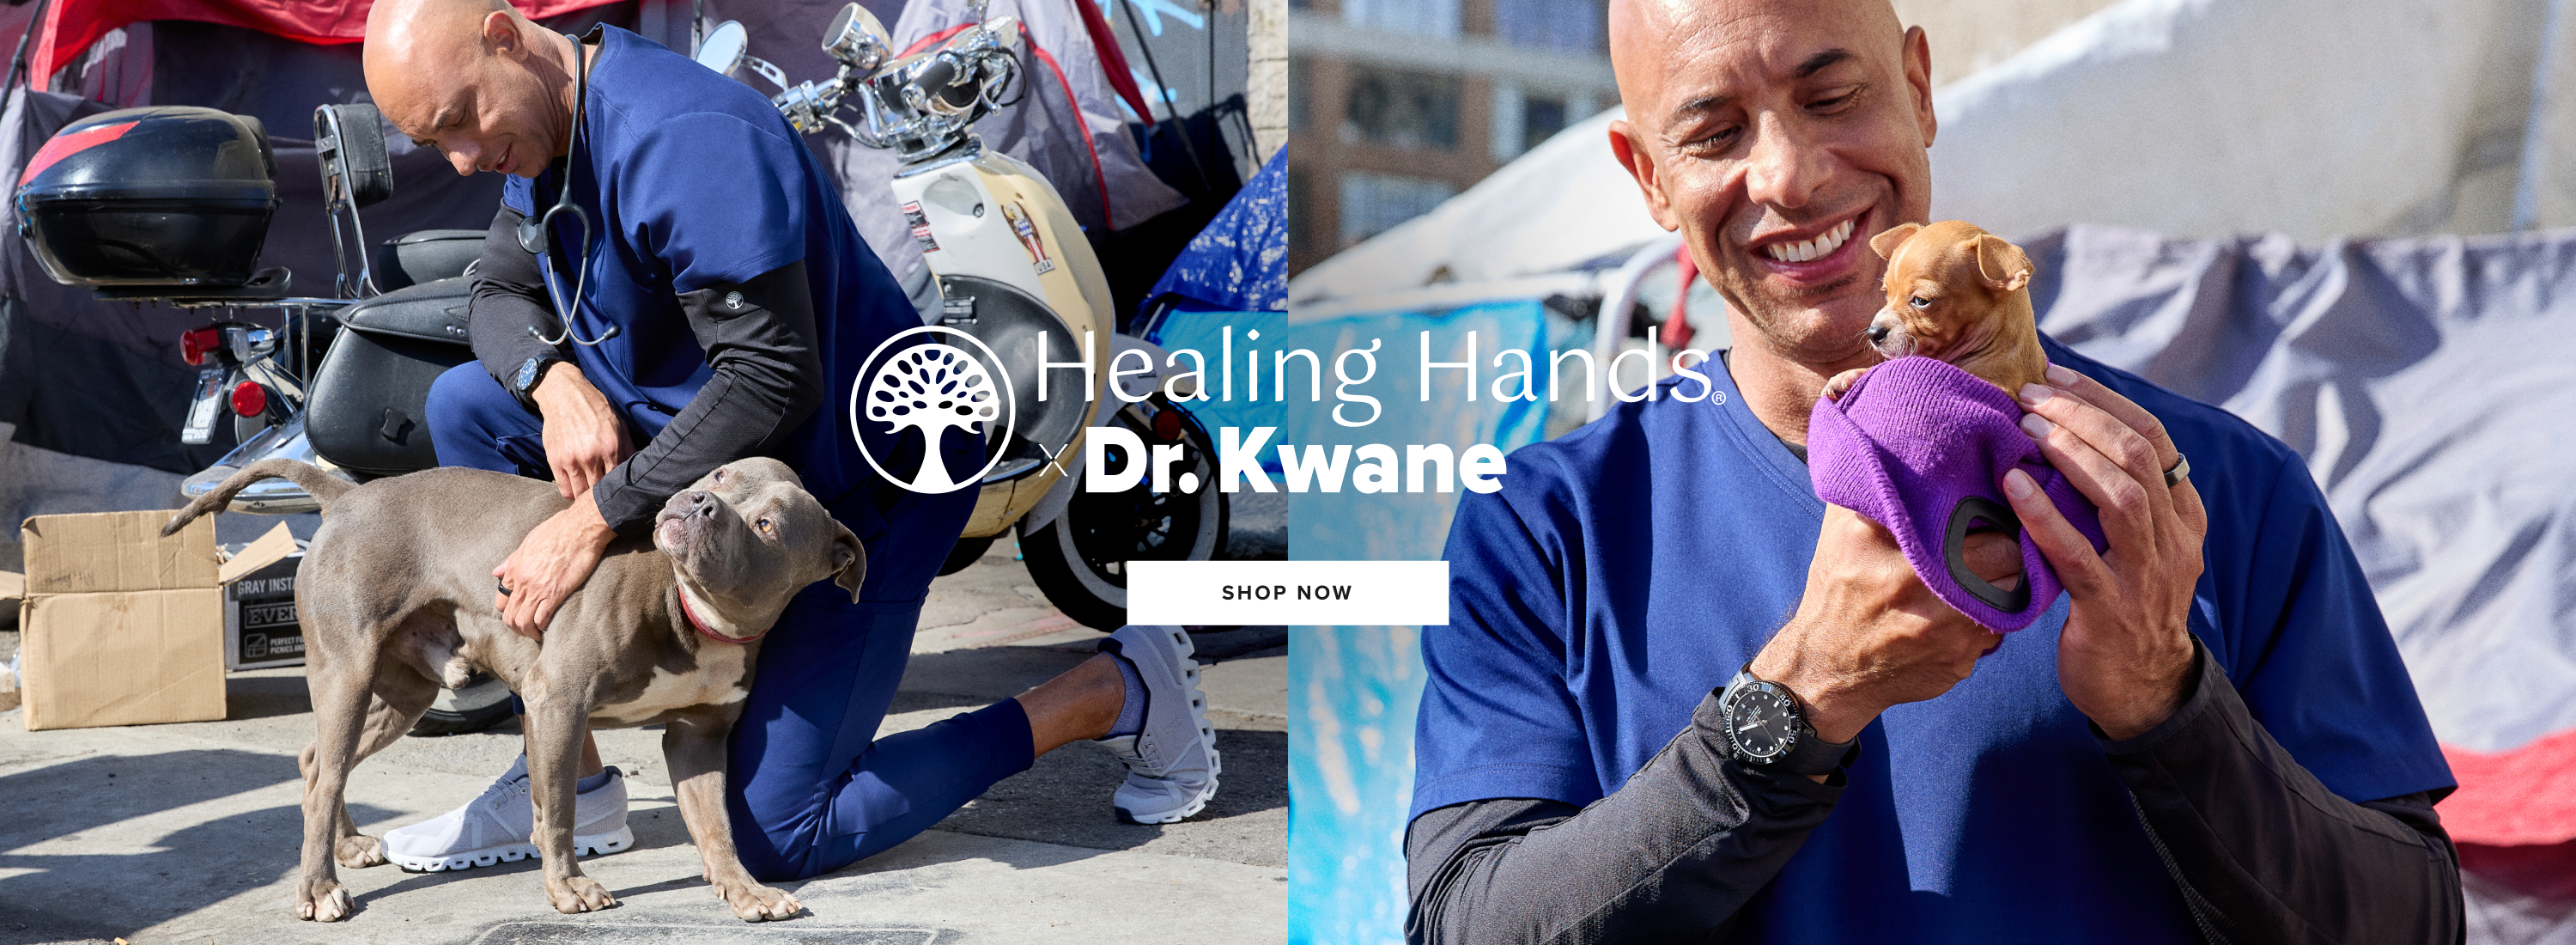 Healing Hands
x Dr. Kwane